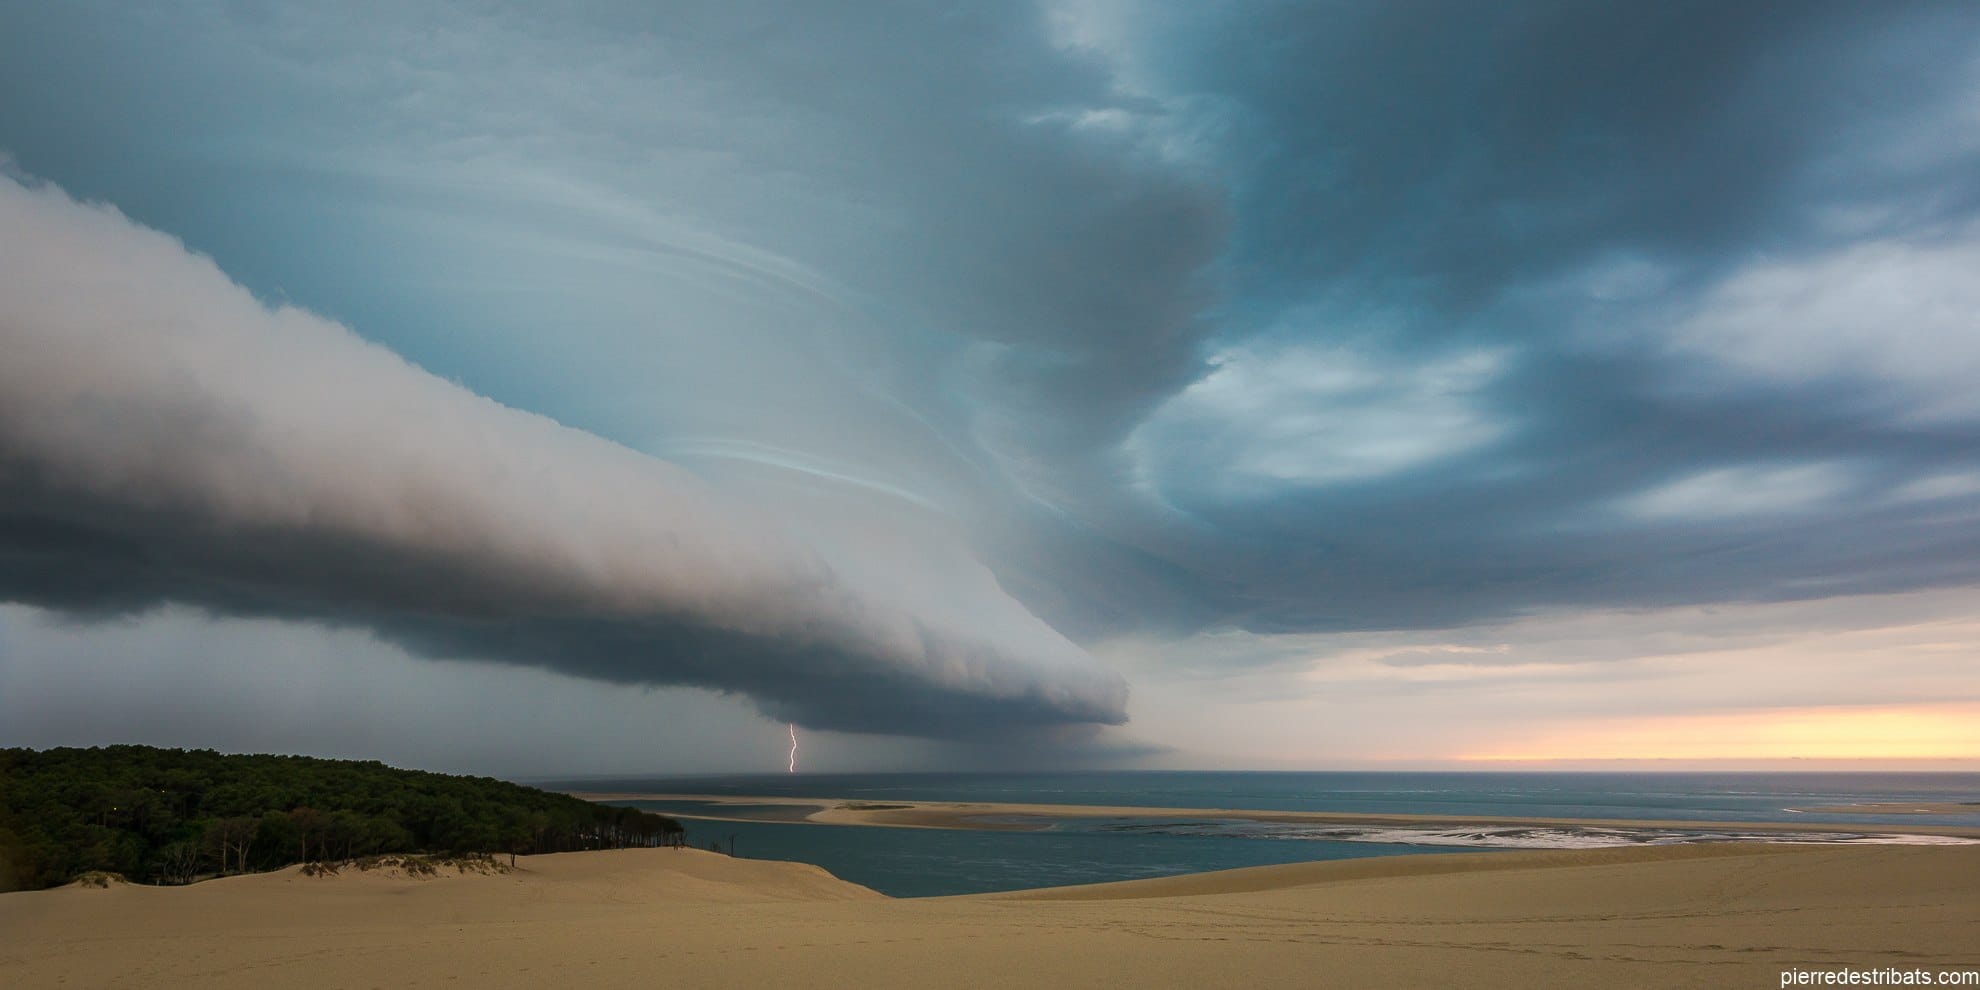 Magnifique cliché des orages vus depuis la dune du Pilat en Gironde. - 08/06/2017 21:00 - Pierre DESTRIBATS